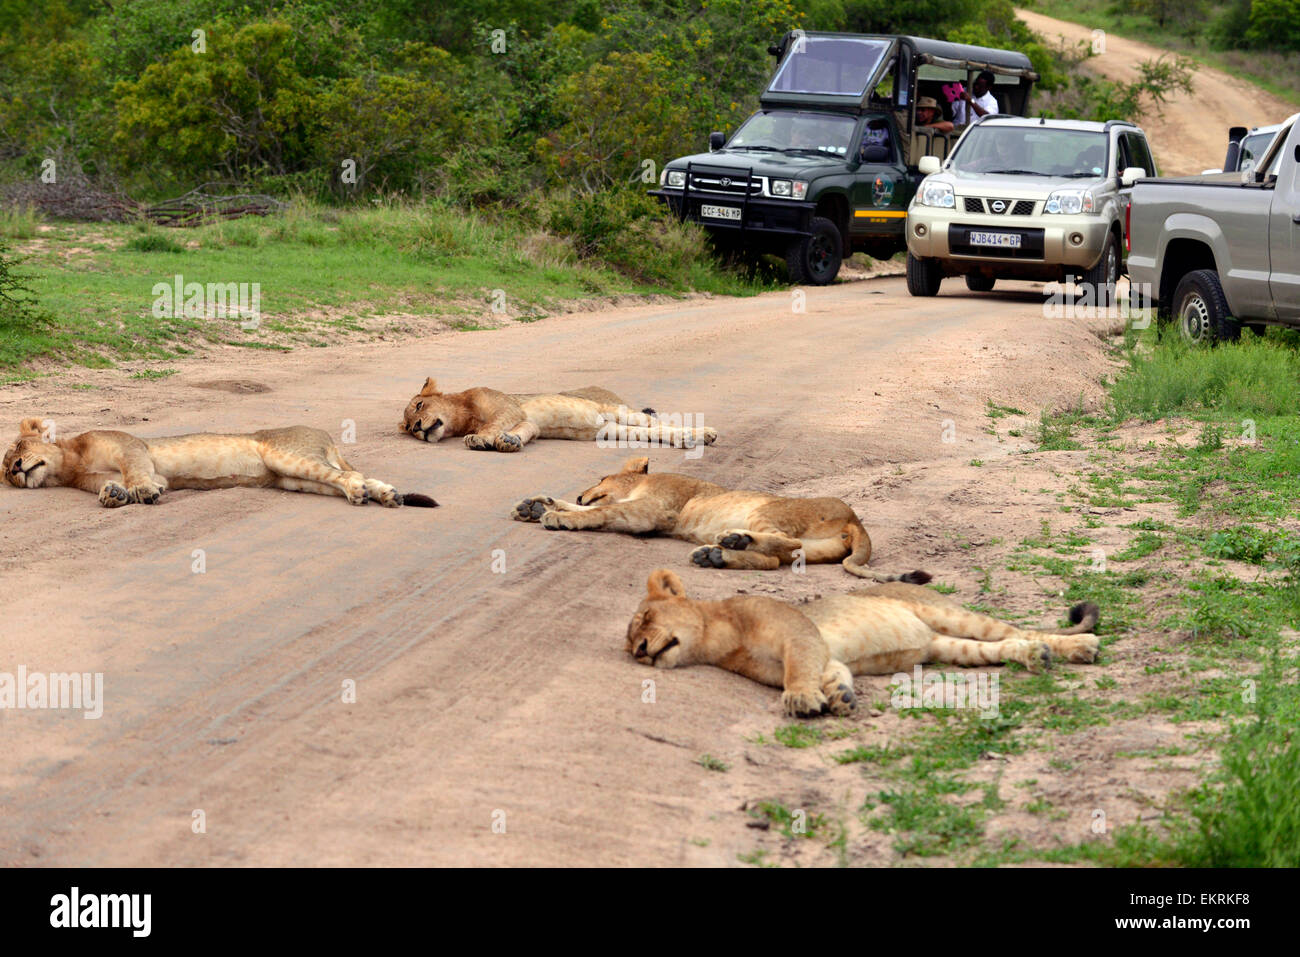 Lion pride holgazanean en la carretera cerca de Skukuza, formando un bloque de carreteras para los turistas, el Parque Nacional Kruger, Sudáfrica. Foto de stock